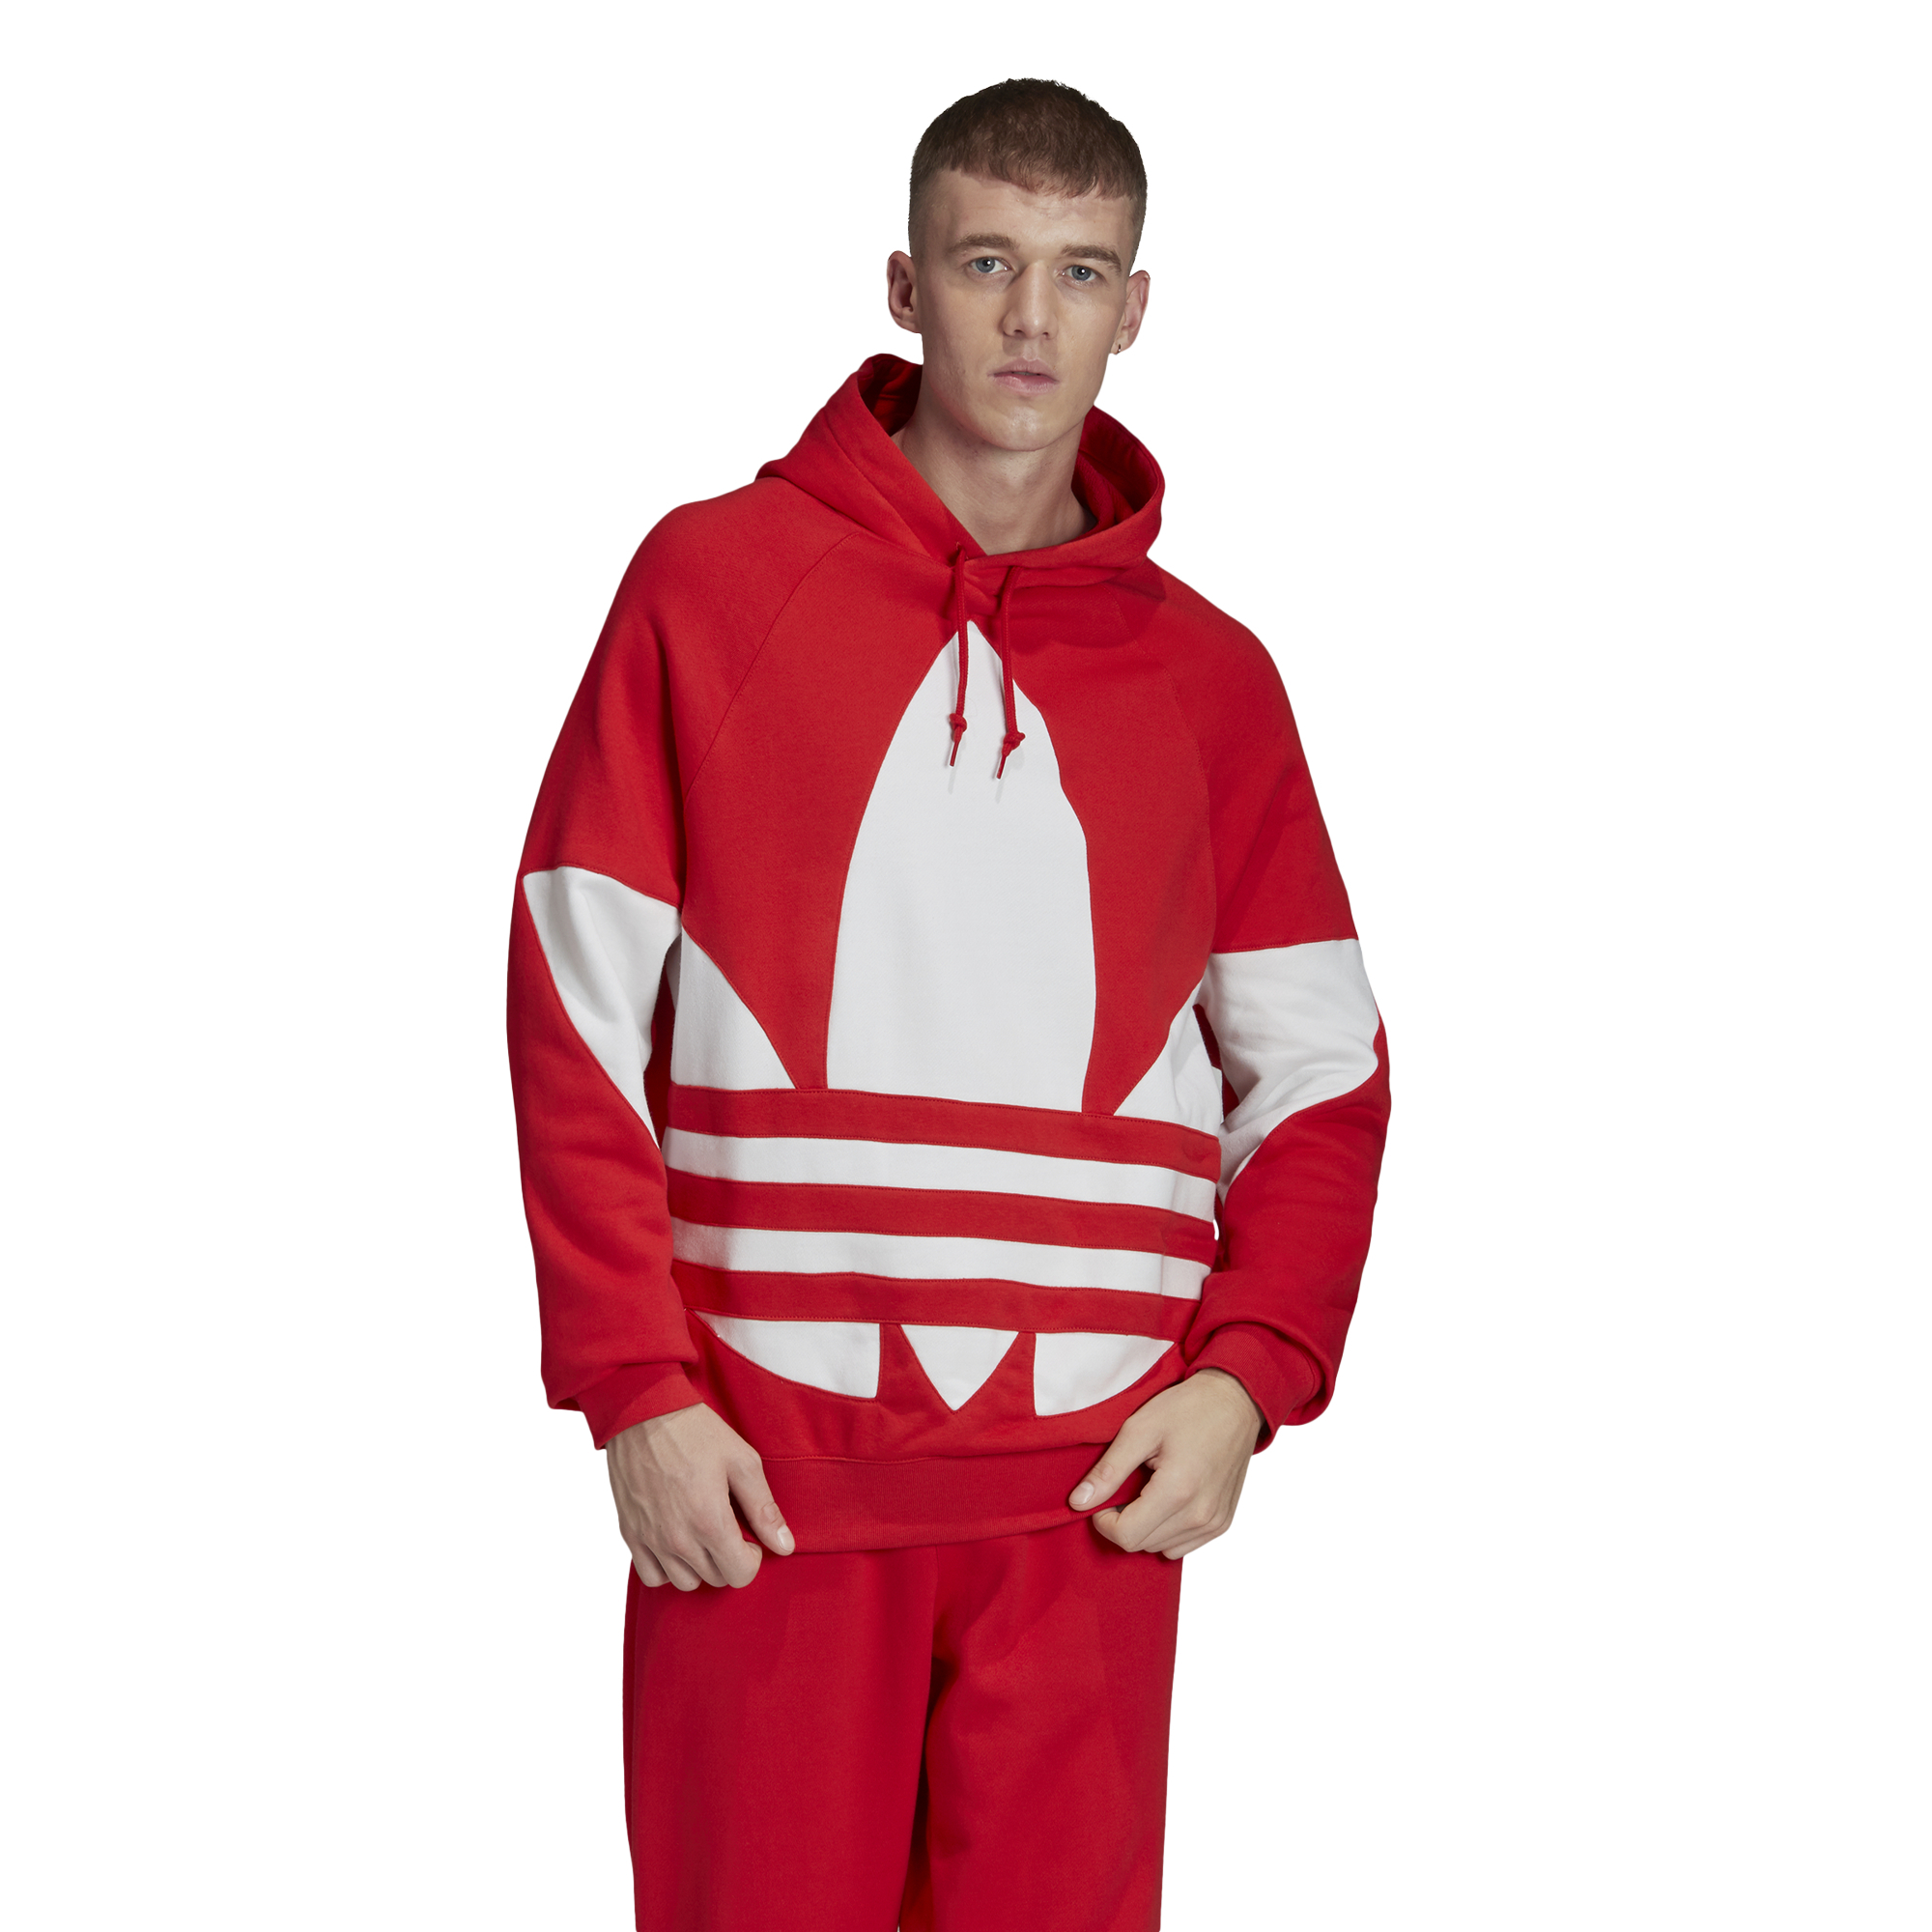 red adidas hoodie mens